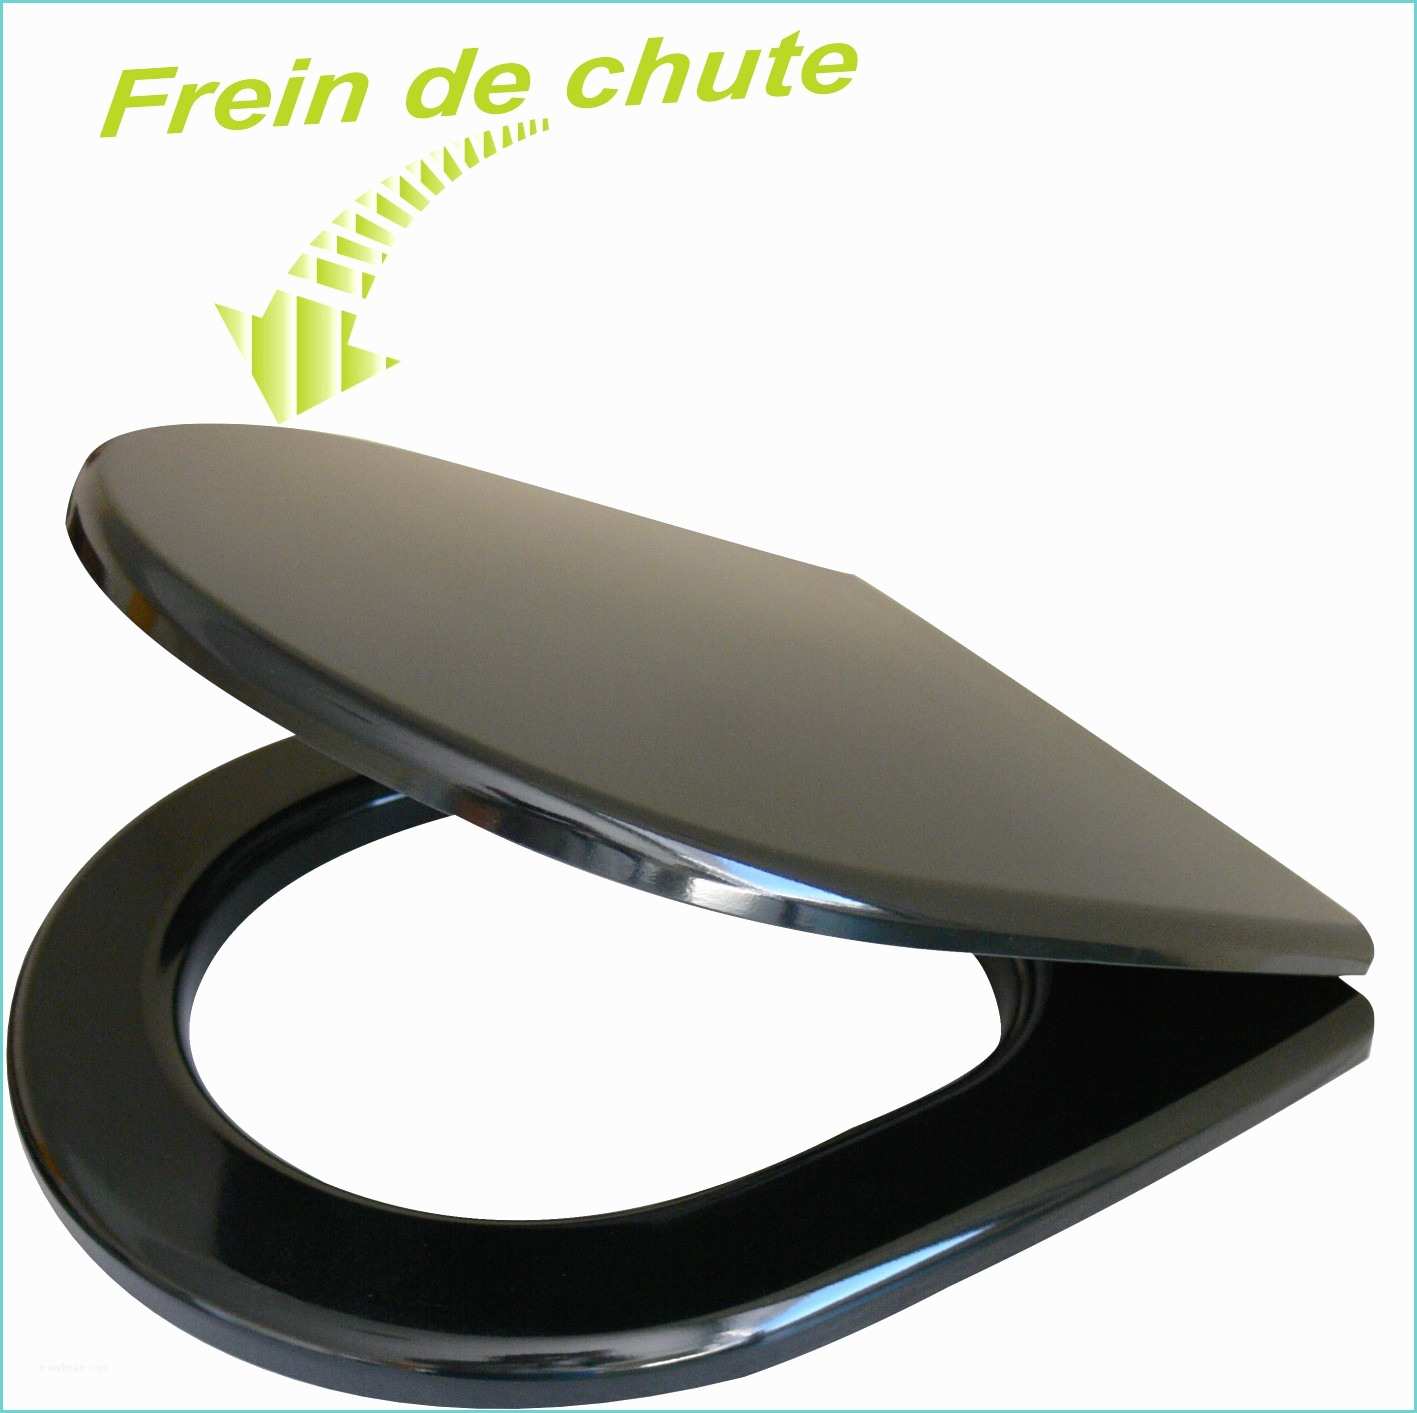 Abattant Wc Noir Avec Frein De Chute Lunette Wc Design Perfect Duravit Starck toilet Seat